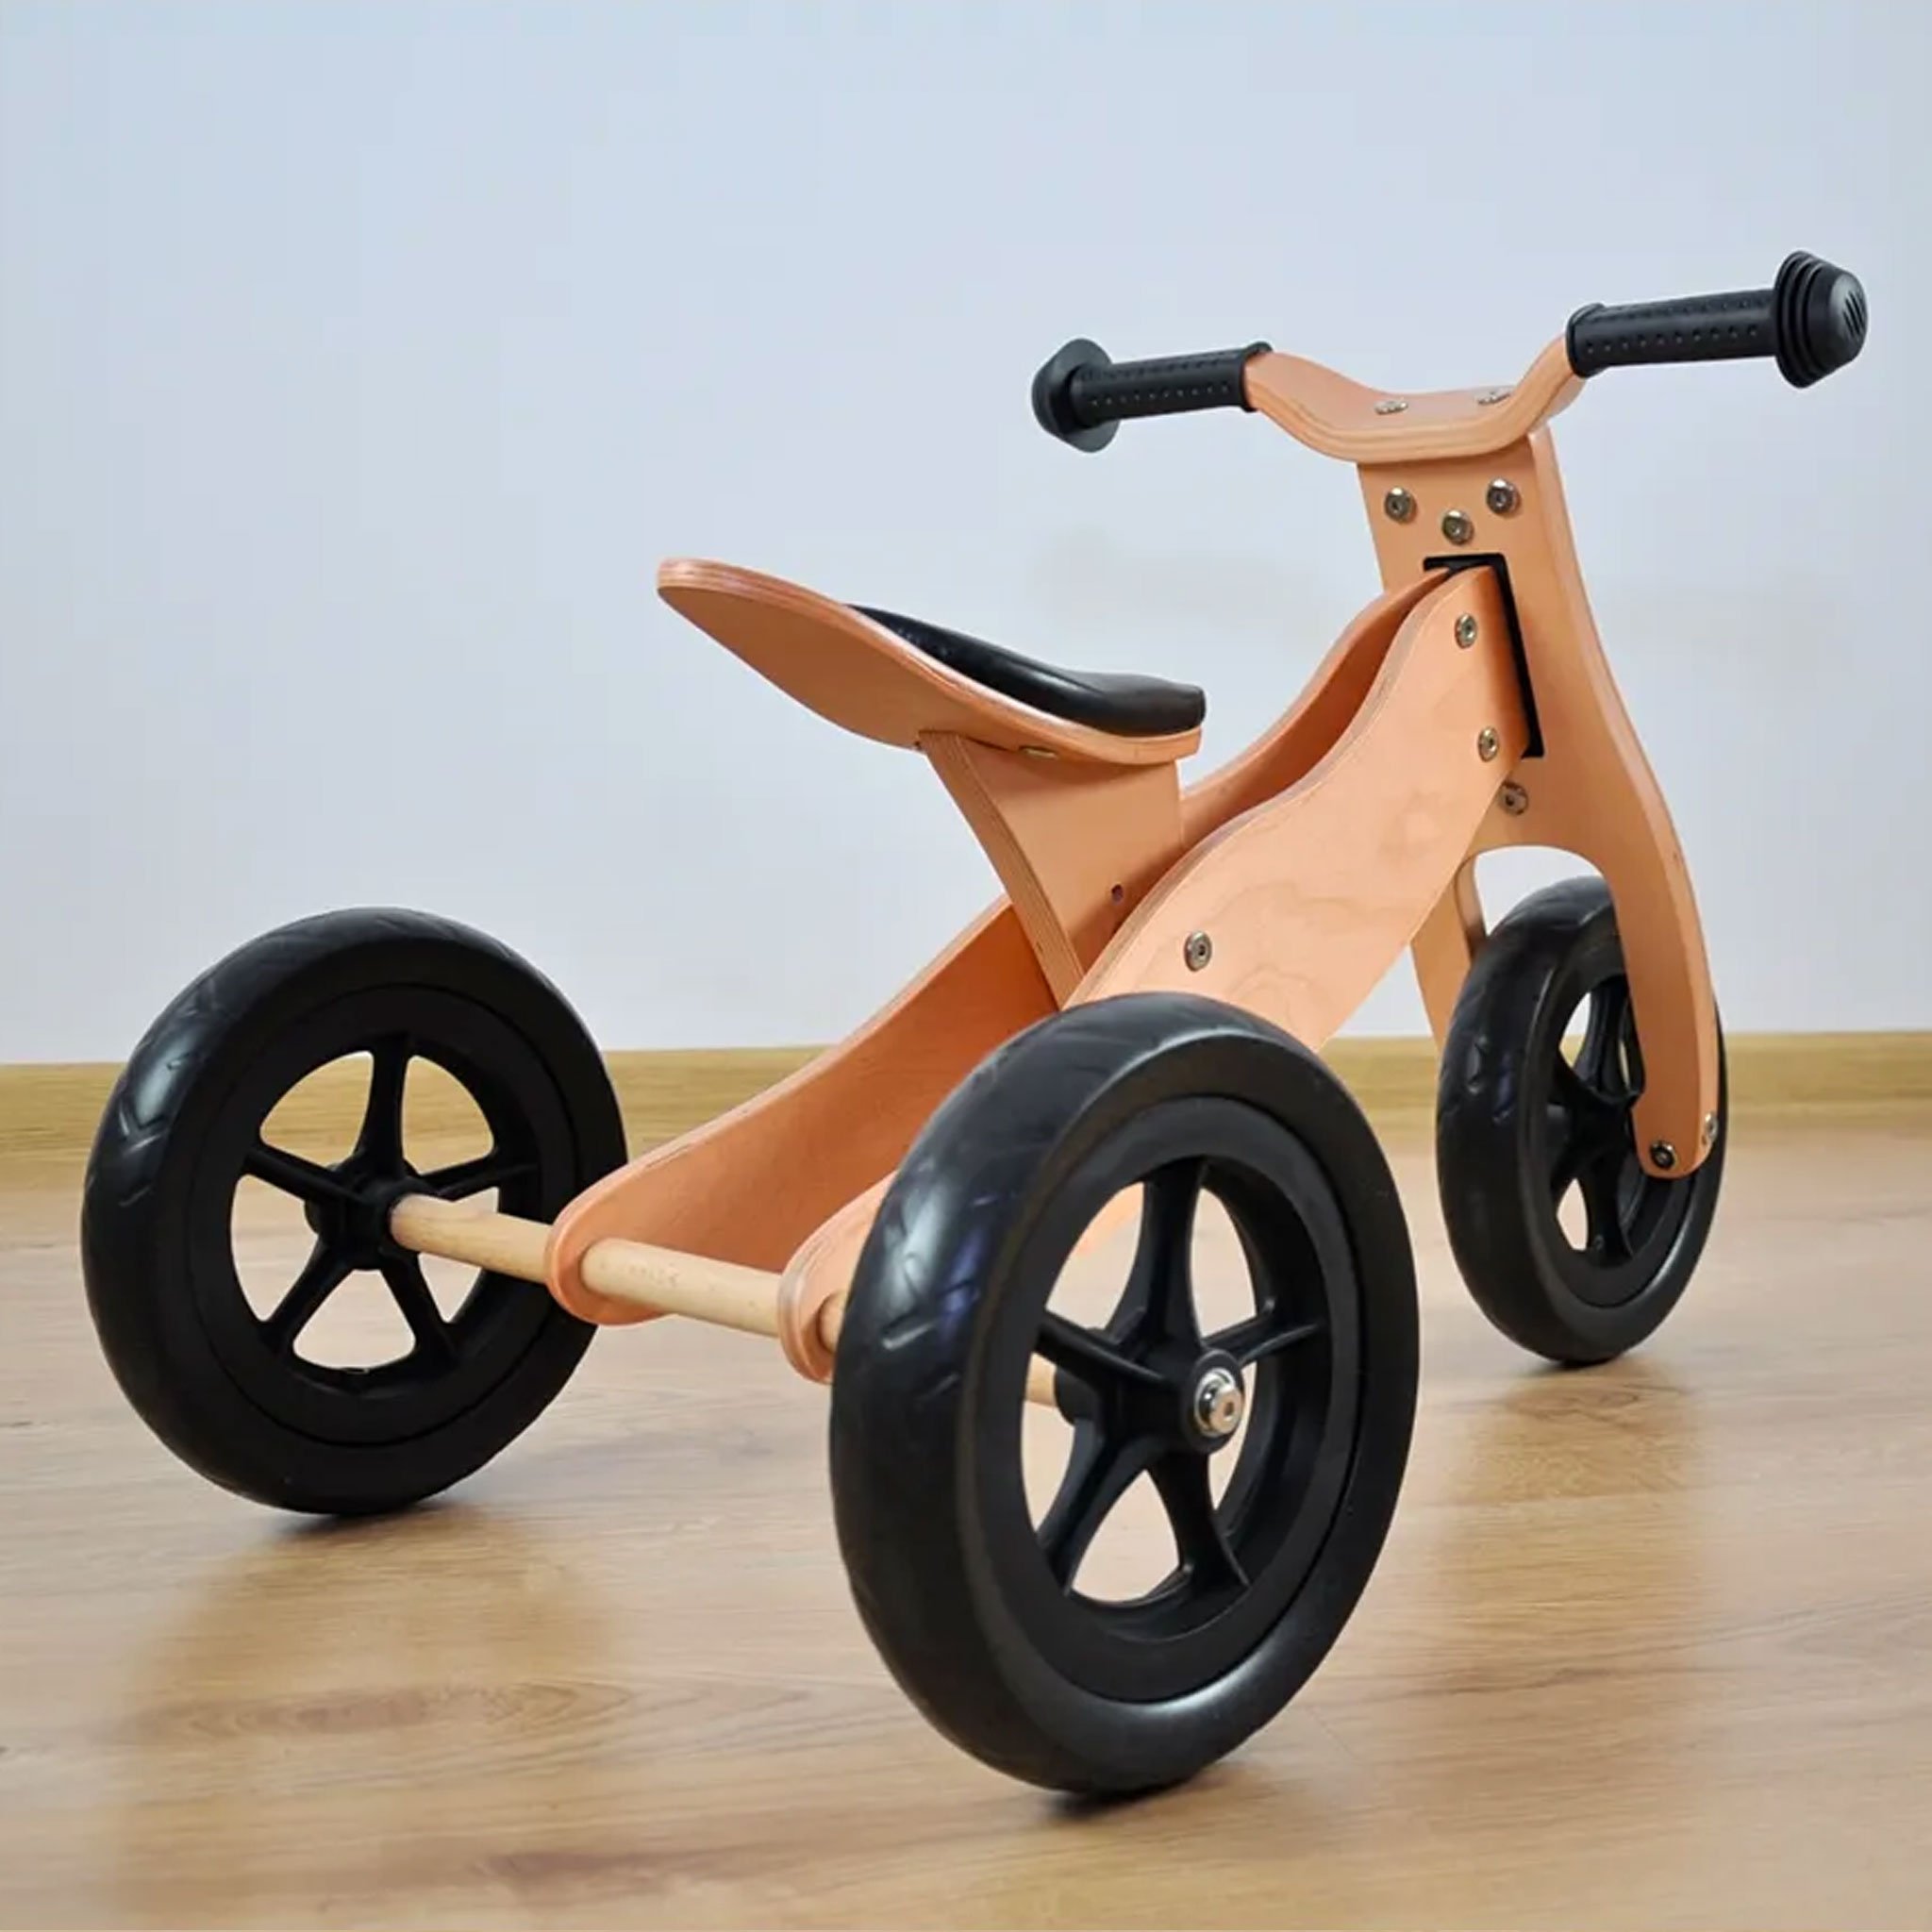 PM2770-triciclo-legno-cavalcabile-ruote-bici-senza-pedali-bambini-equilibrio-balance-bike-giochi-esterno-mobilita-crescita-legno-betulla-all-terrain-trasforma-lato-casa-3-ruote.jpg